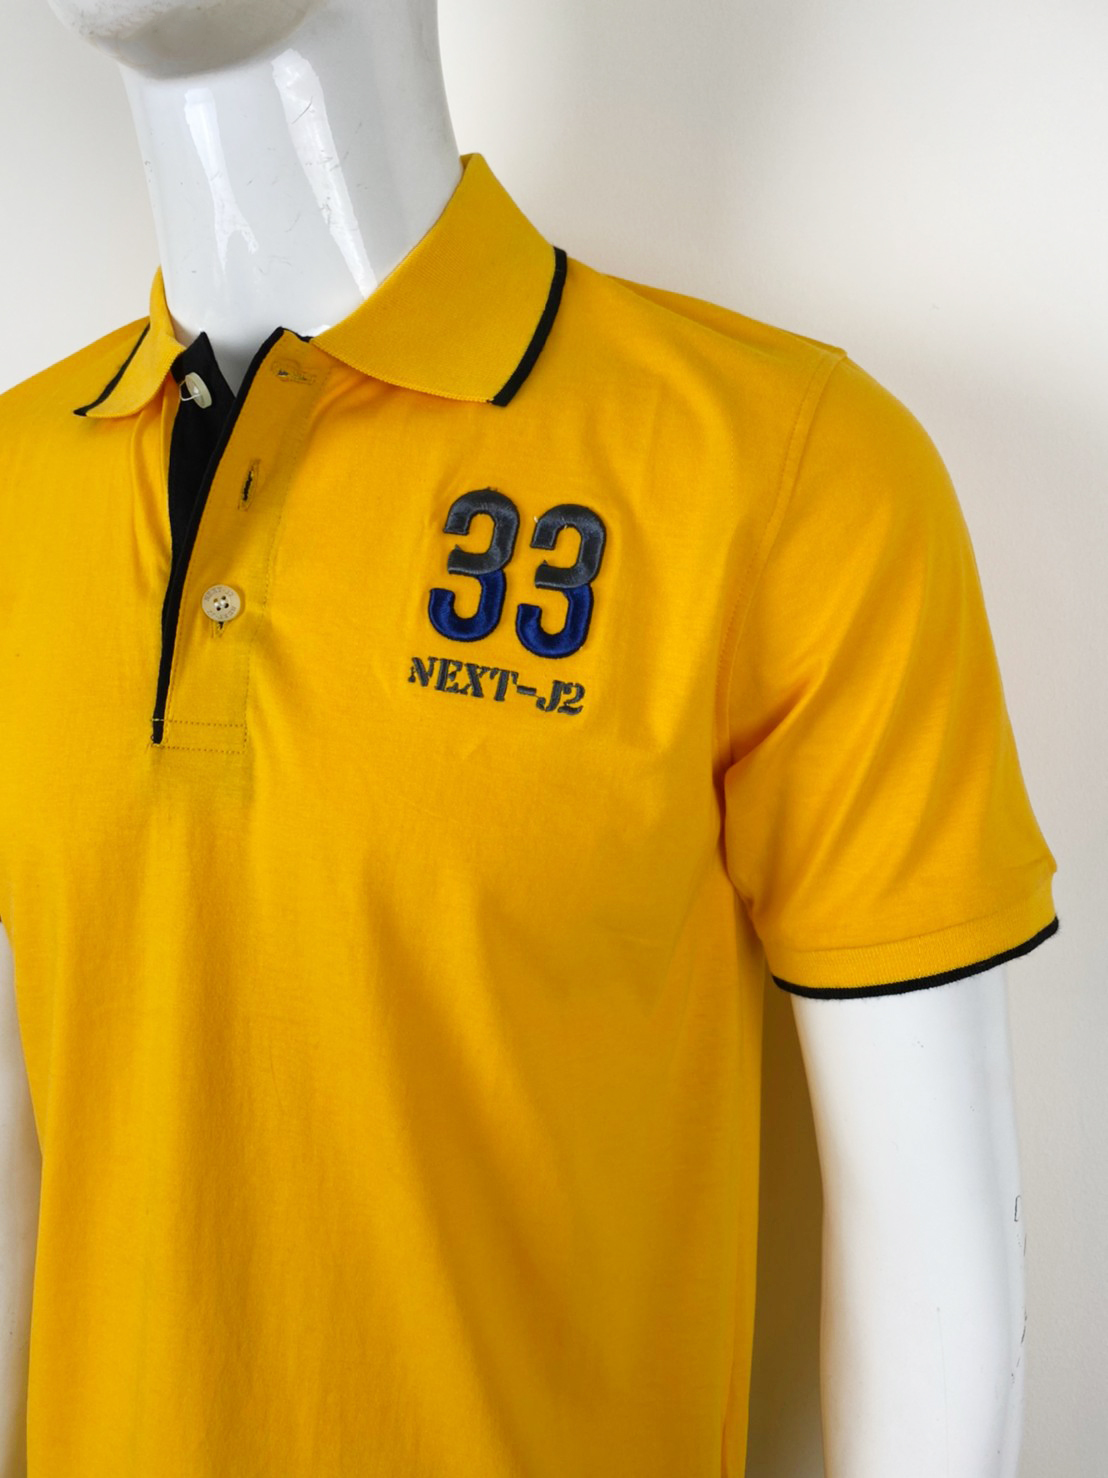 เสื้อโปโลชาย ยี่ห้อ Next-J2 ผ้าคอตตอน100 Men Polo Shirt cotton100% มีหลายสีให้เลือก M-รอบอก38นิ้ว , L-รอบอก42นิ้ว ,Xl-รอบอก46 นิ้ว